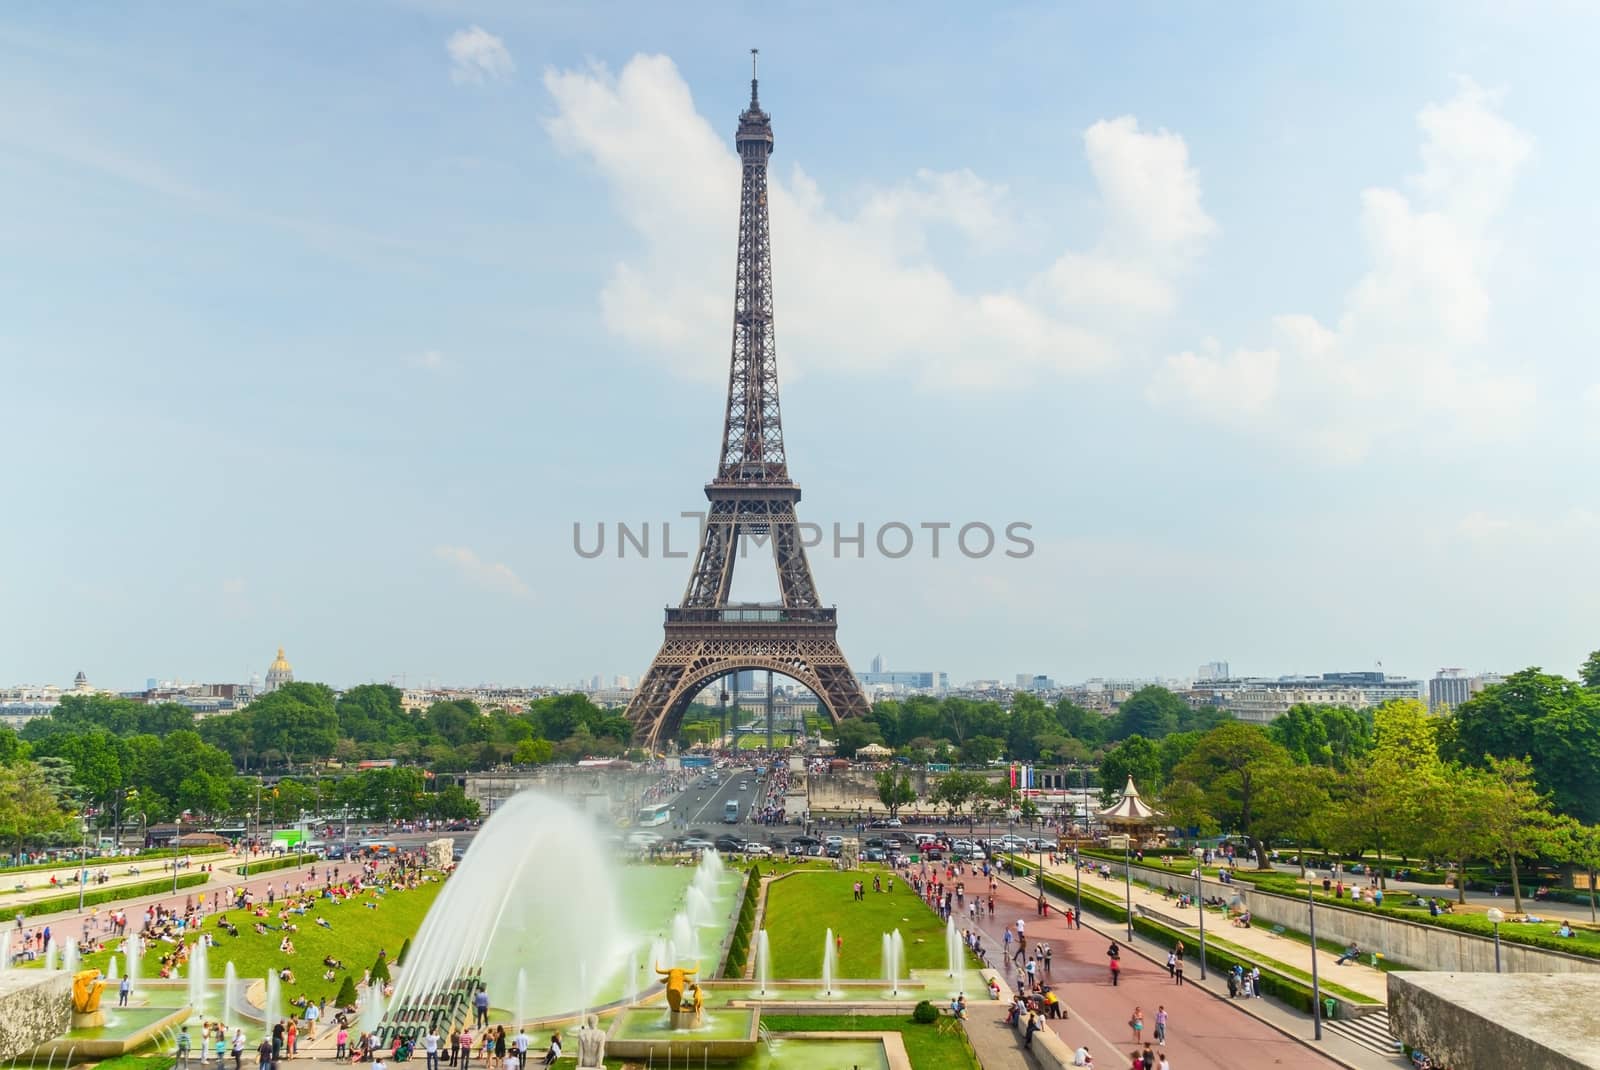 Eifel Tower in Paris by aleksaskv